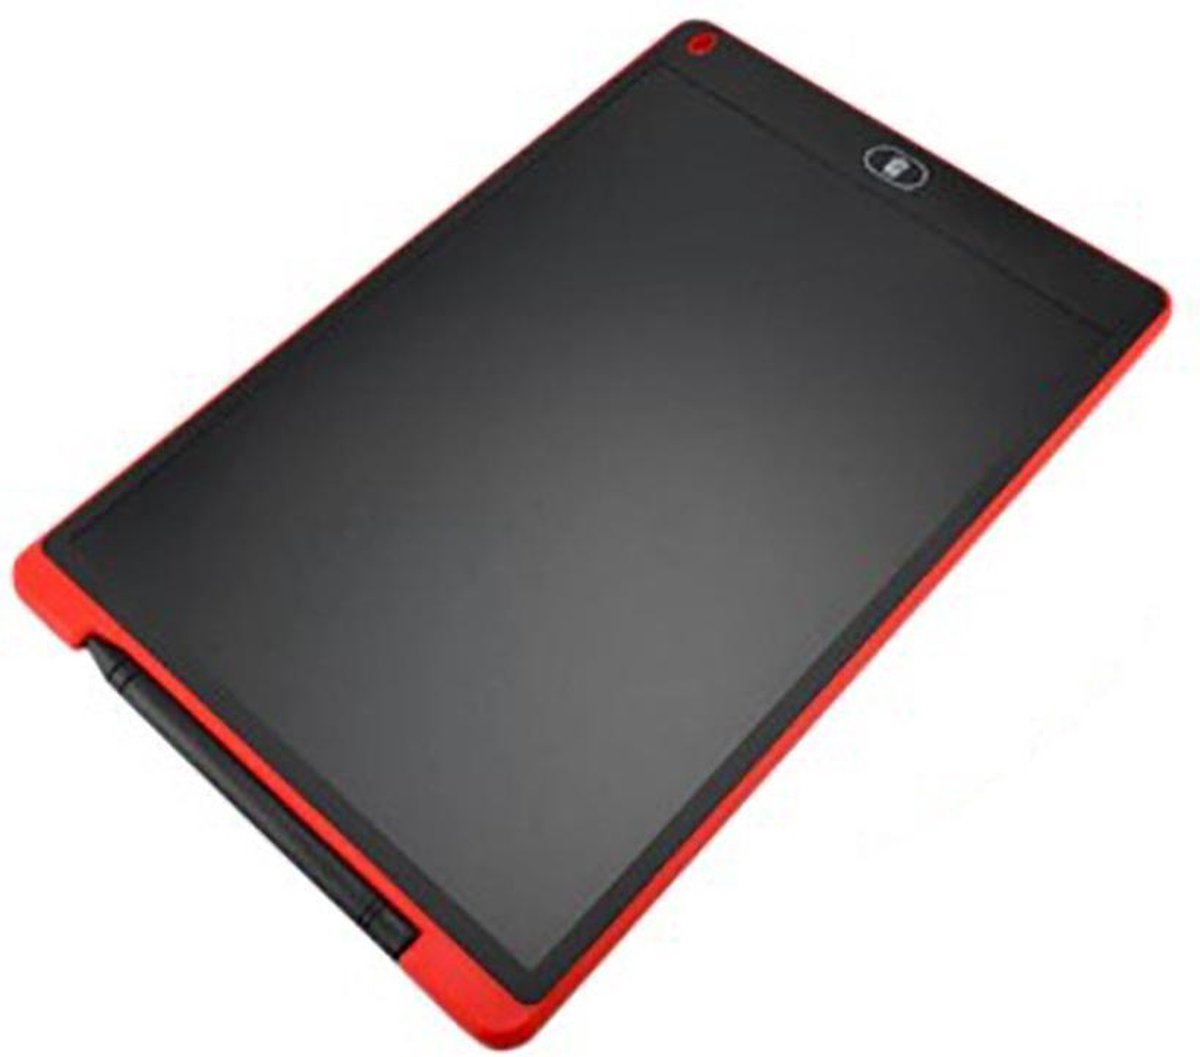 Grafische tablet voor tekenen voor kinderen - 8,5 Inch Elektronische LCD TekenTablet -Schrijftablet voor kinderen Rood